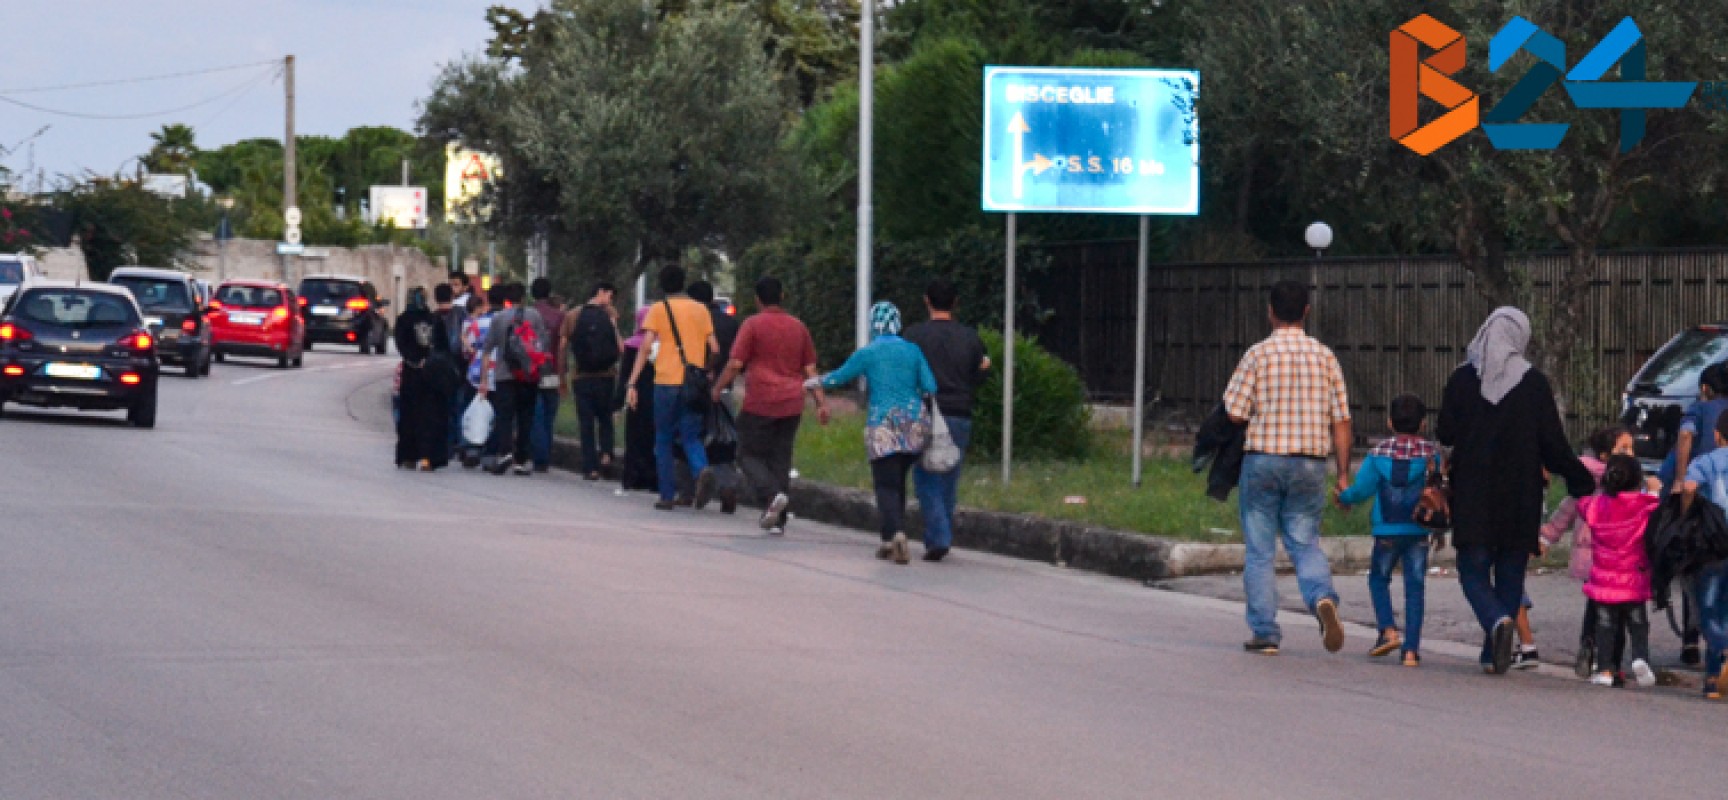 Quaranta profughi arrivati ieri a villa San Giuseppe, alcuni hanno rifiutato e sono andati via / FOTO